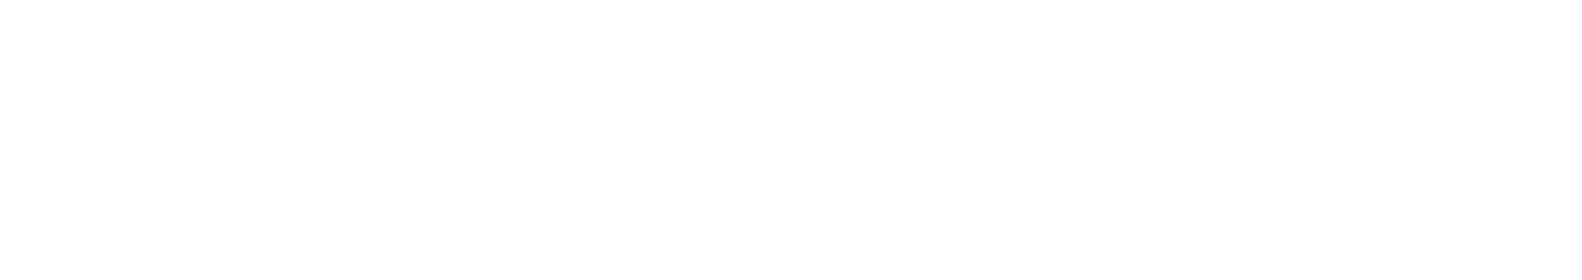 Paccar logo grand pour les fonds sombres (PNG transparent)